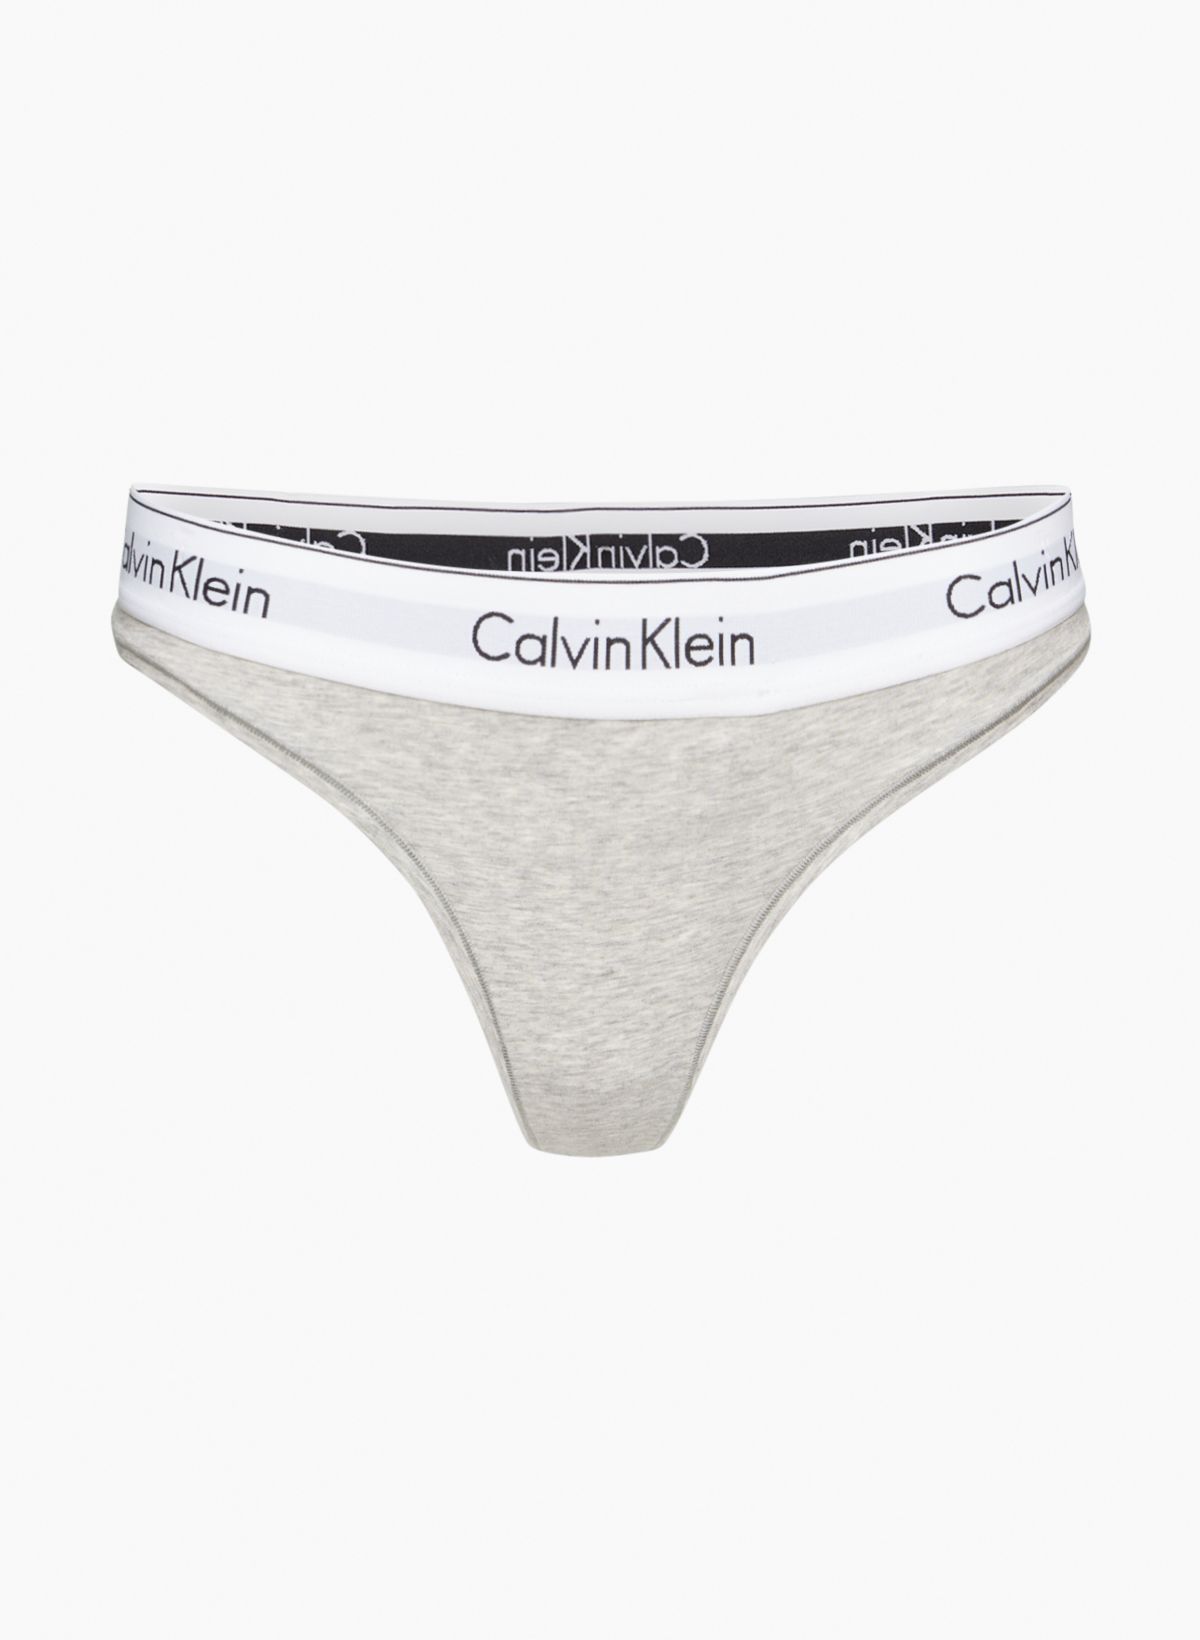 Calvin Klein Underwear Try On 